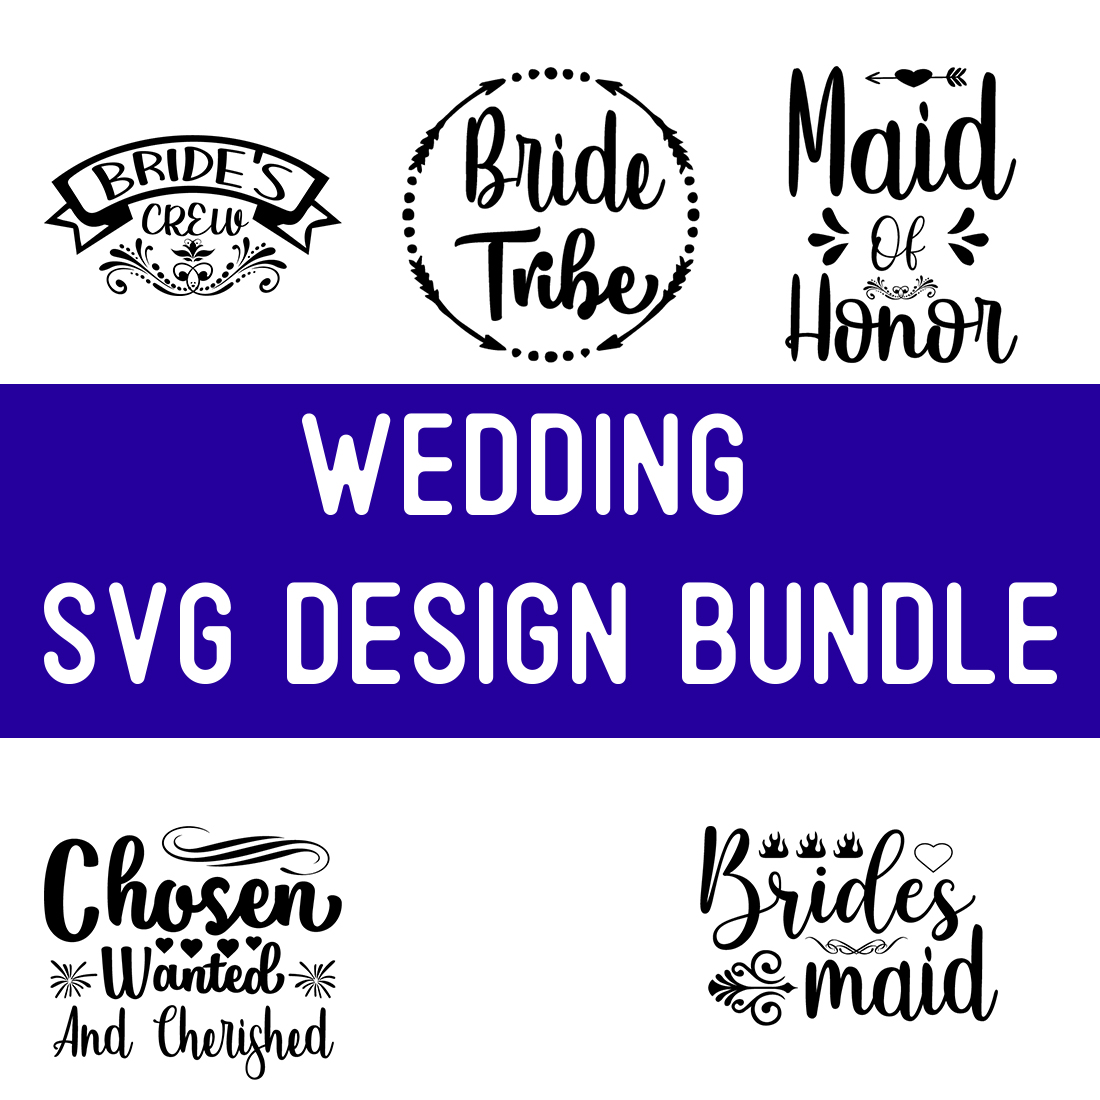 wedding SVG Design Bundle preview image.